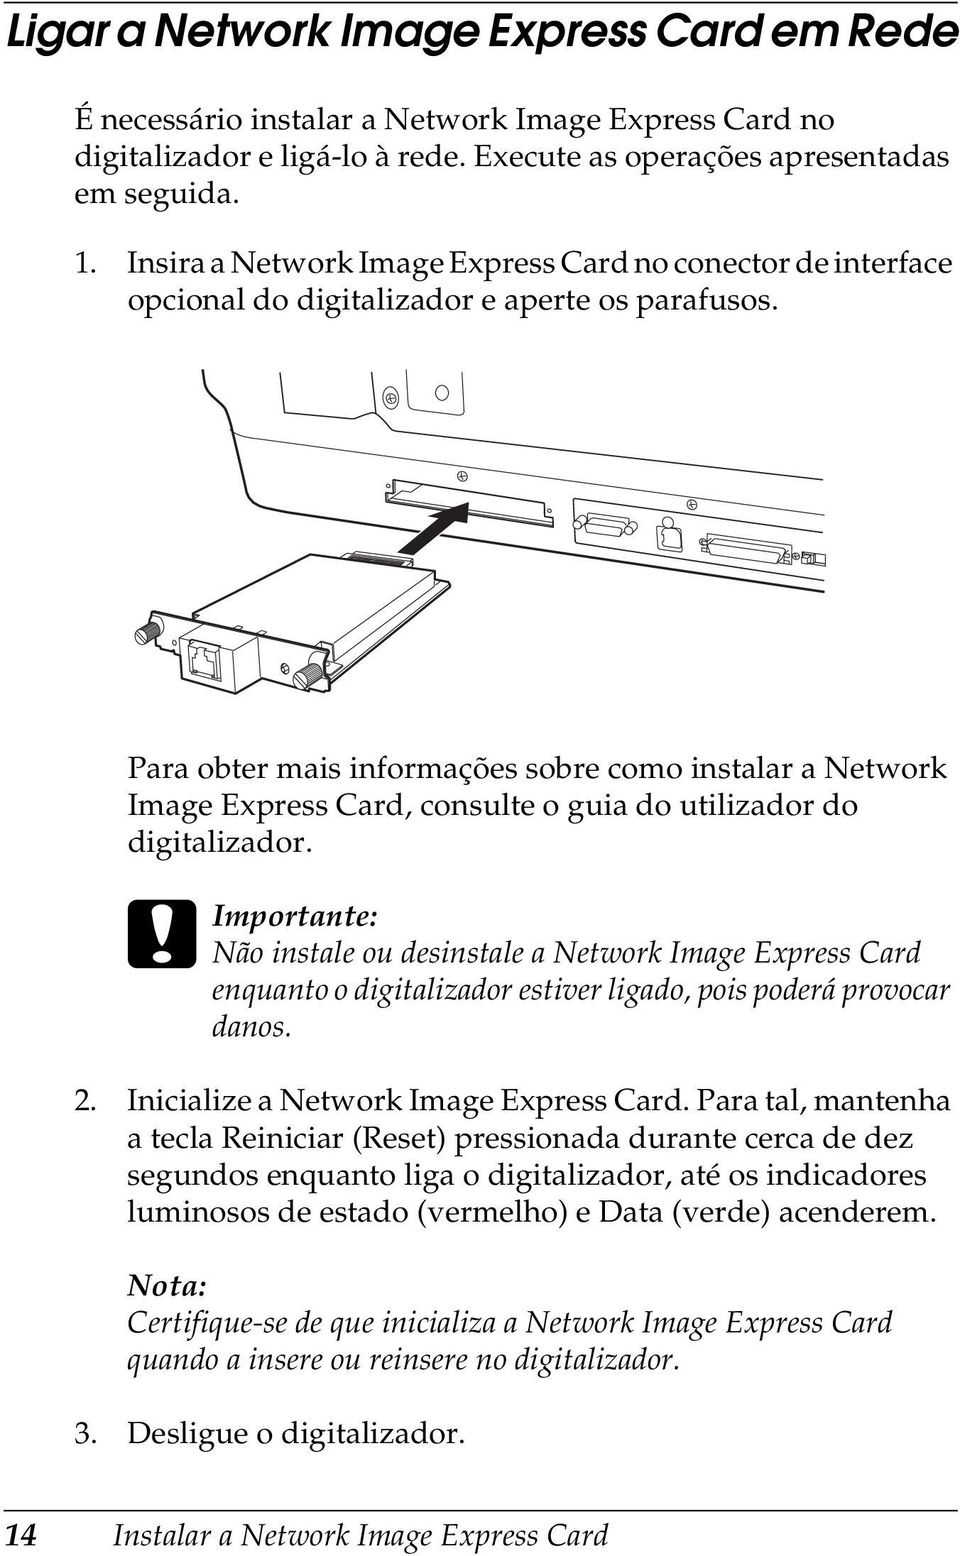 Para obter mais informações sobre como instalar a Network Image Express Card, consulte o guia do utilizador do digitalizador.